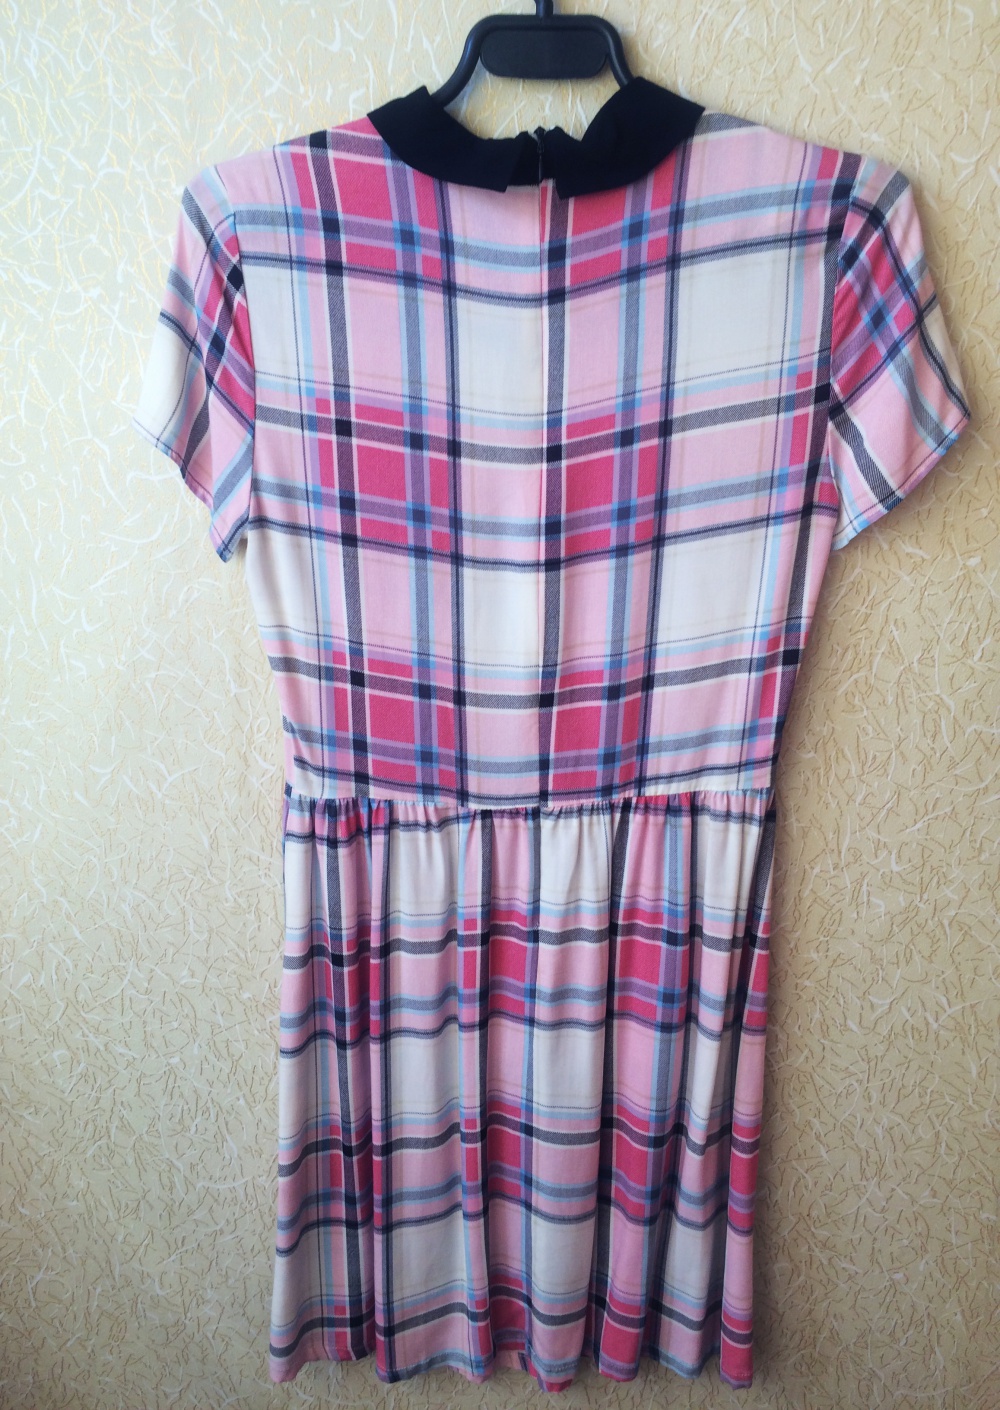 Новое платье в бело-розовую клетку River Island (6 UK)